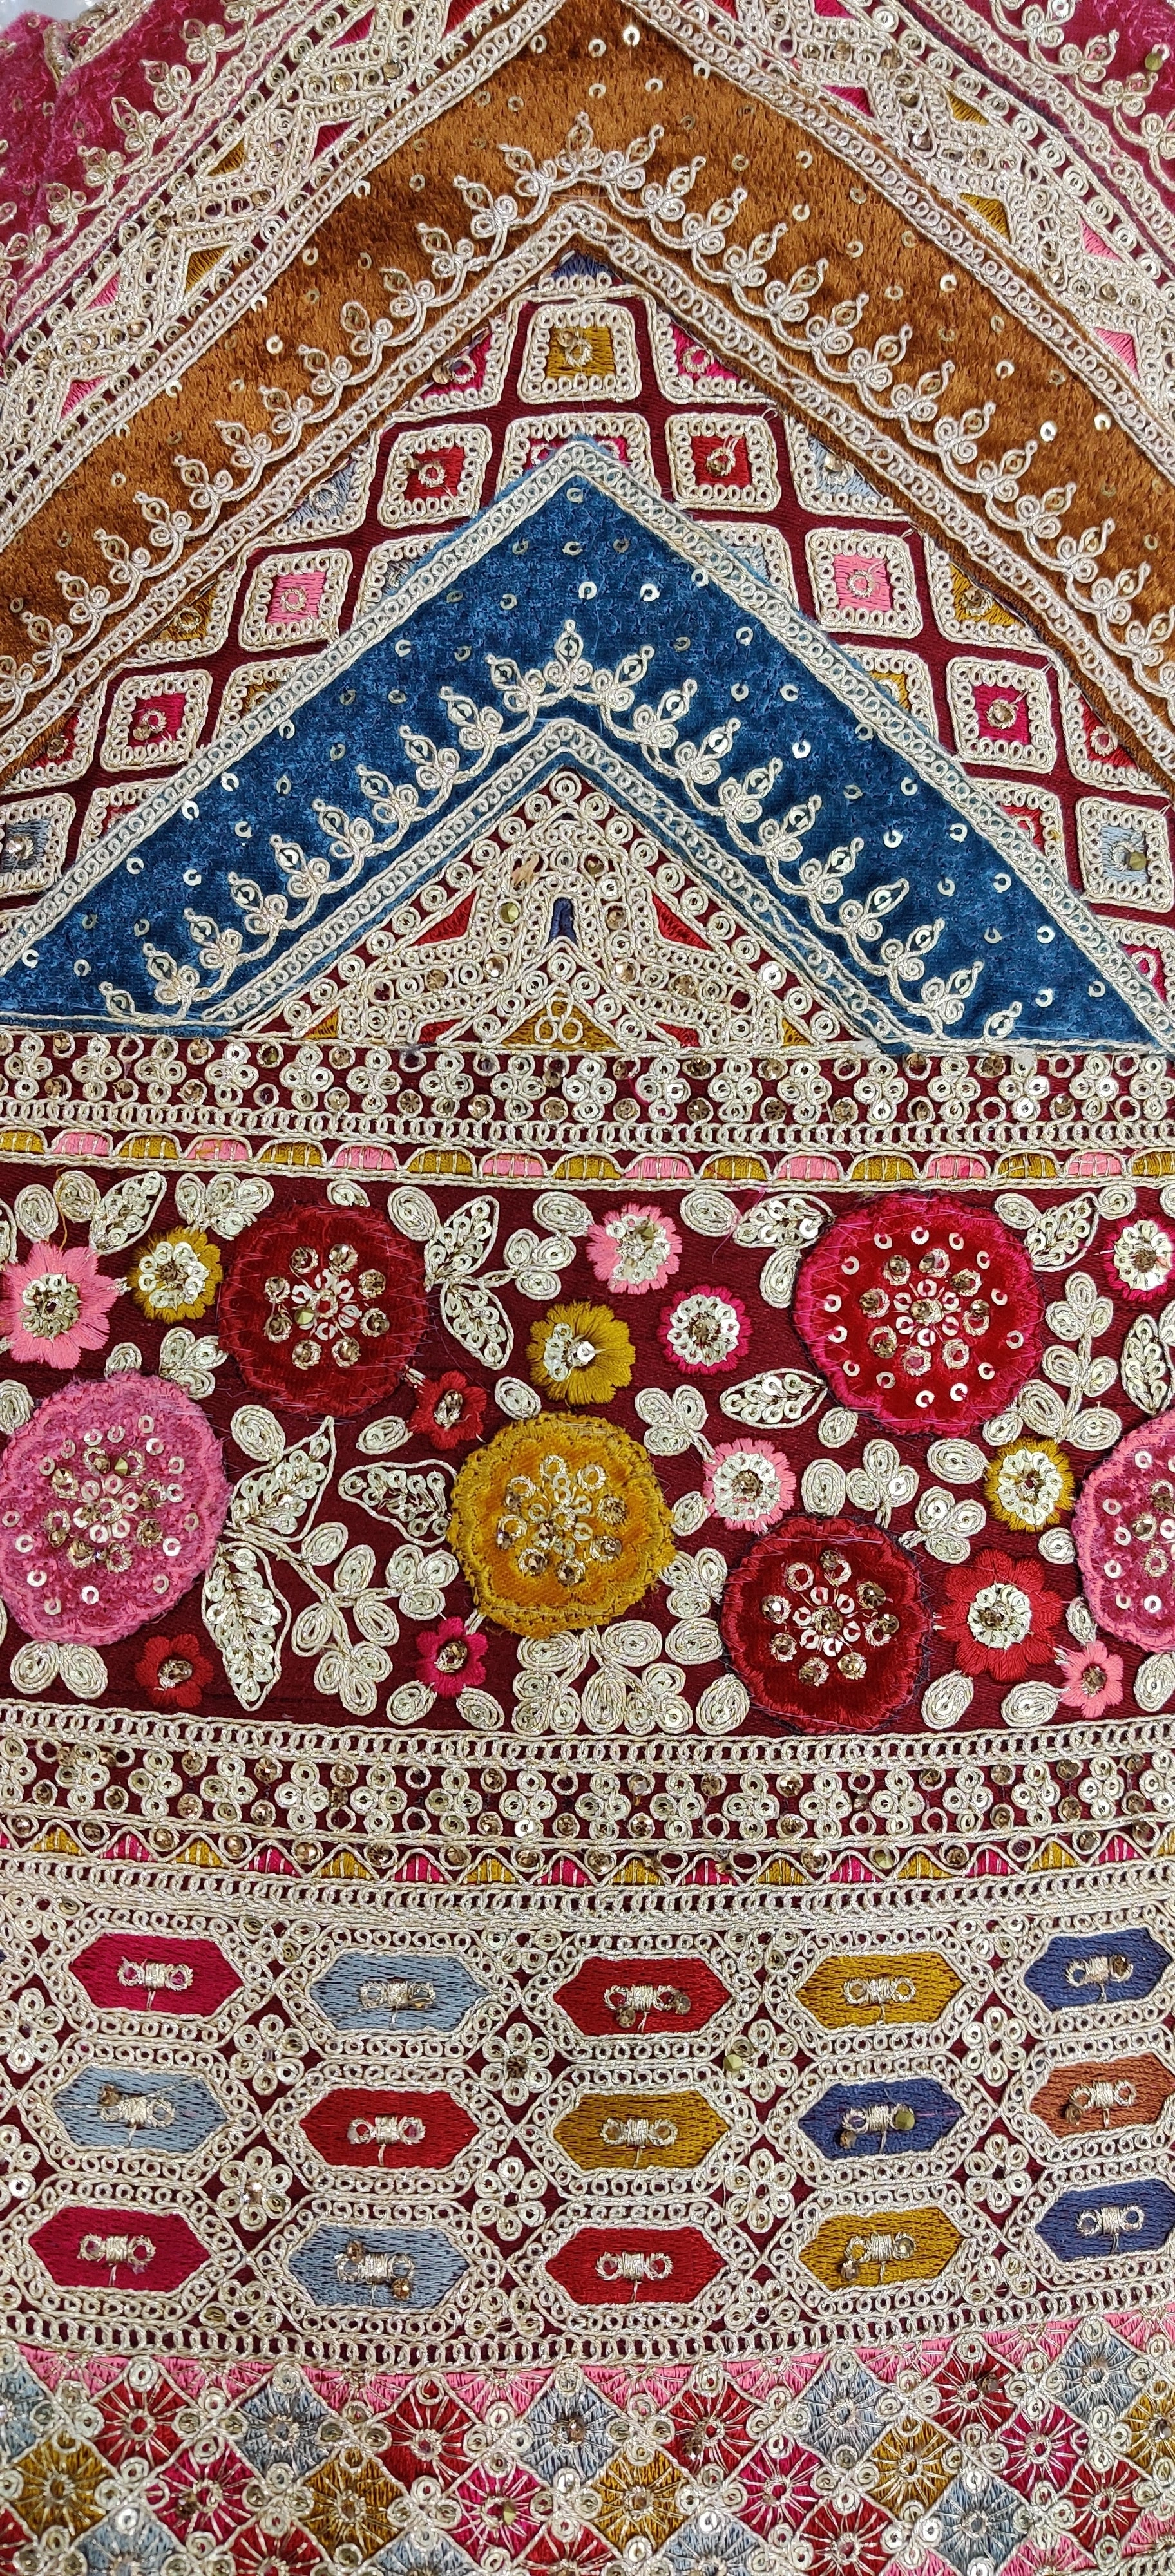 Superb Matching Thread Work Multi-Color Wavy Pattern And Velvet Patch Work Sabyasachi Inspired Bridal Lehengacholi, Bridal Lehenga Choli India-1